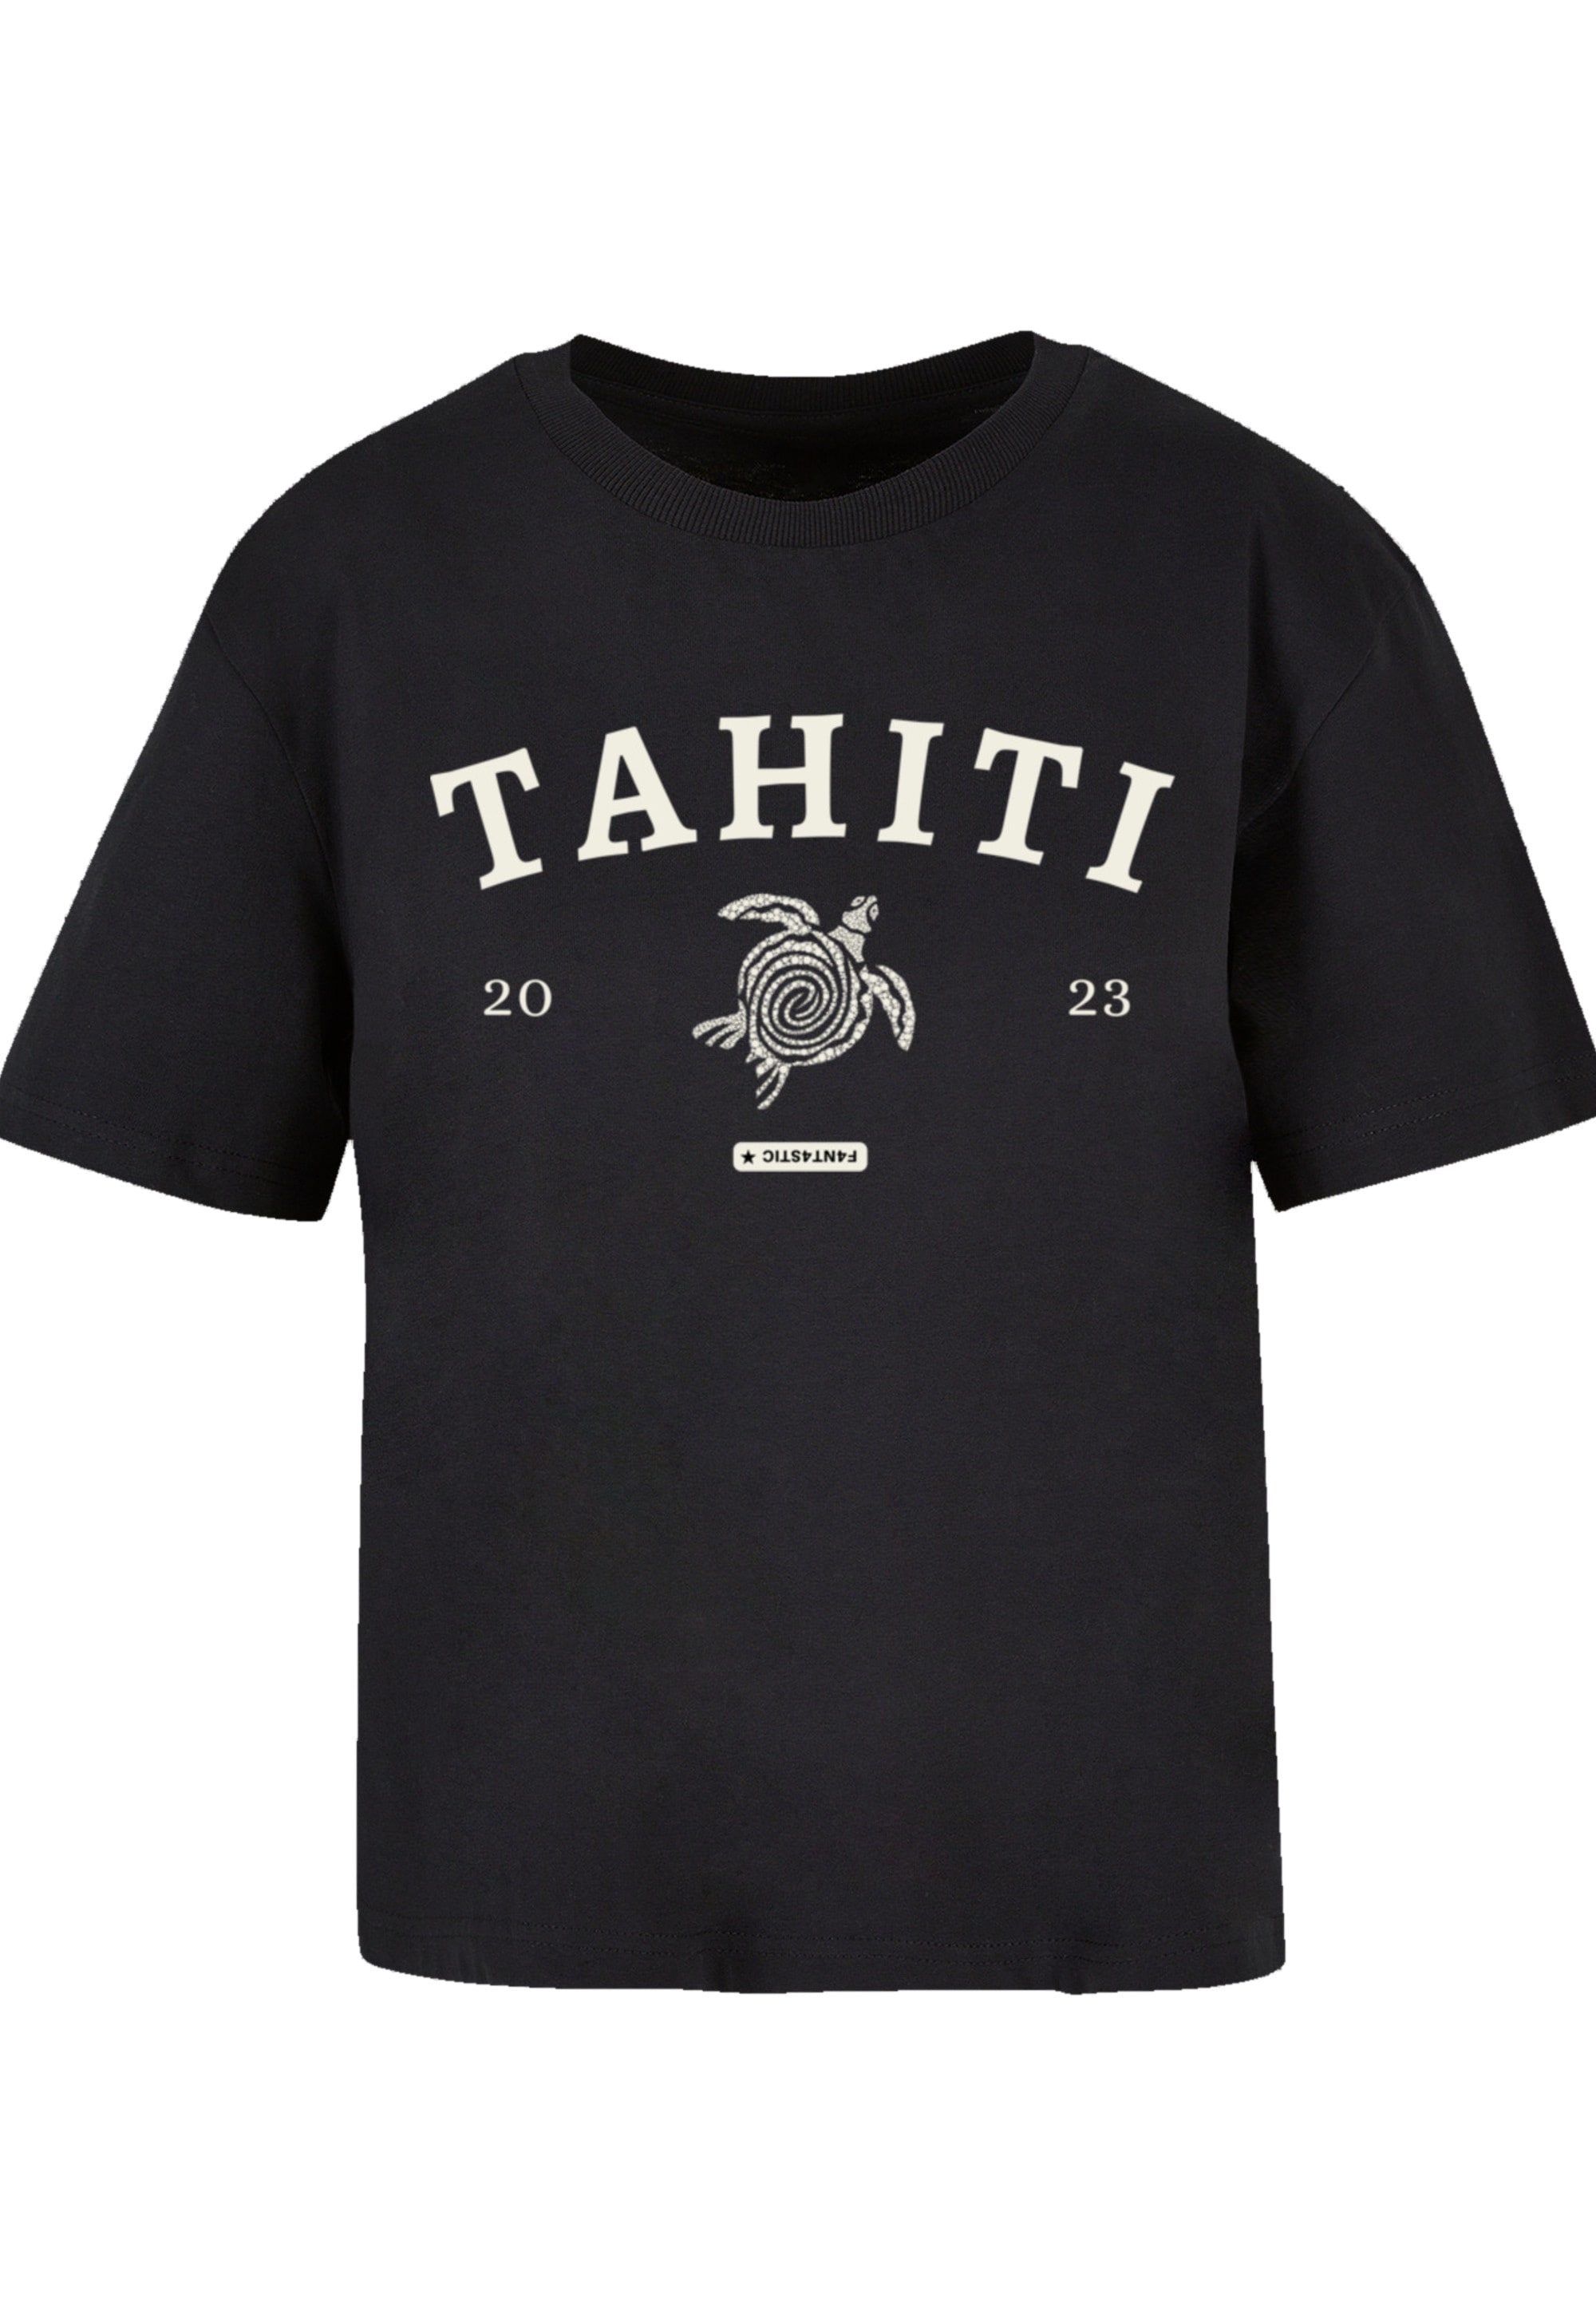 Print »PLUS F4NT4STIC bestellen Tahiti«, T-Shirt SIZE